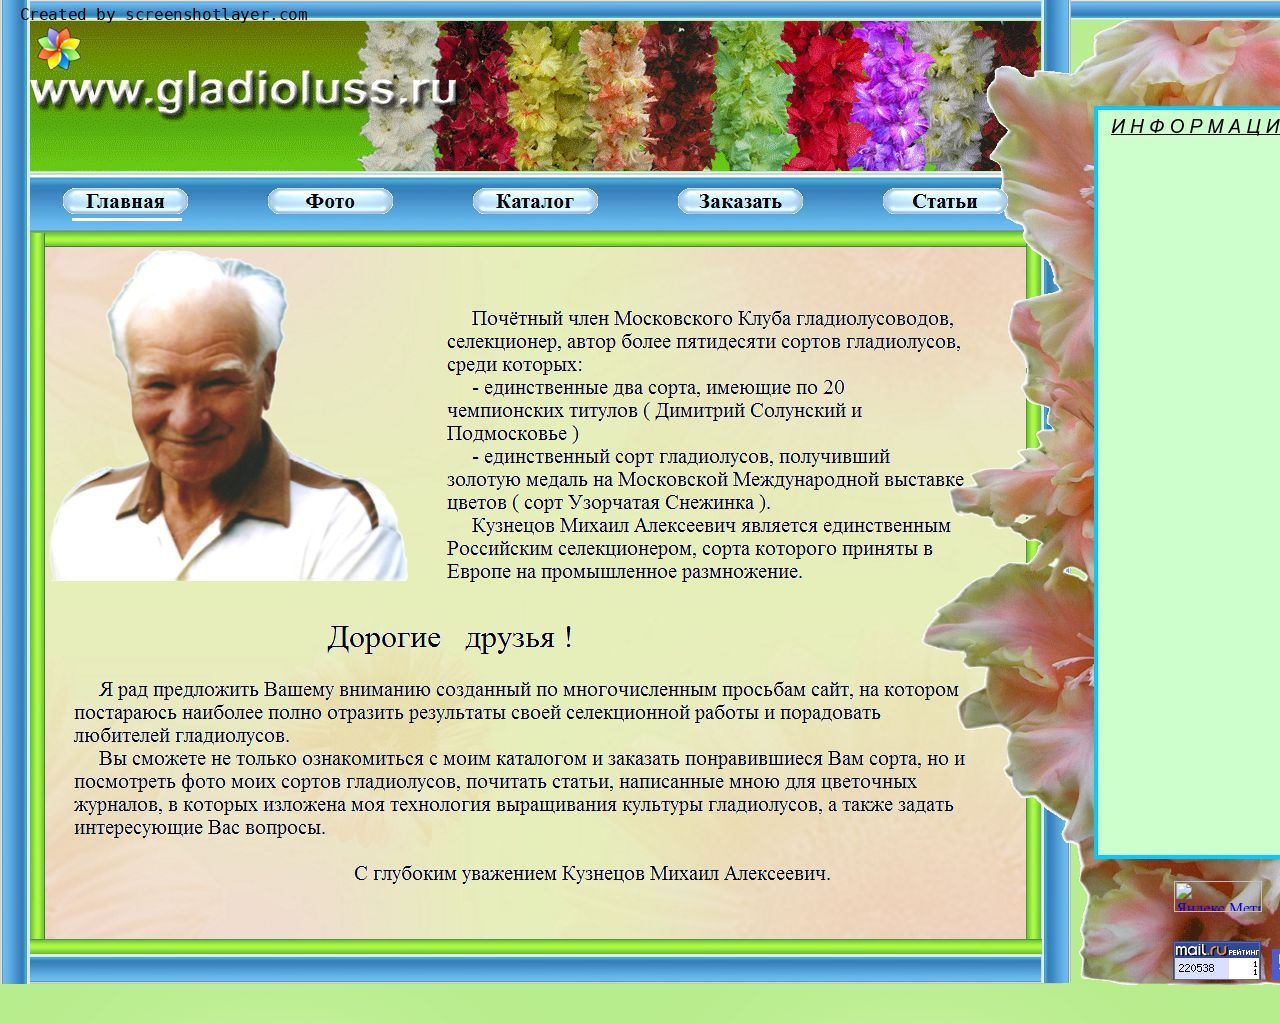 Изображение сайта gladioluss.ru в разрешении 1280x1024